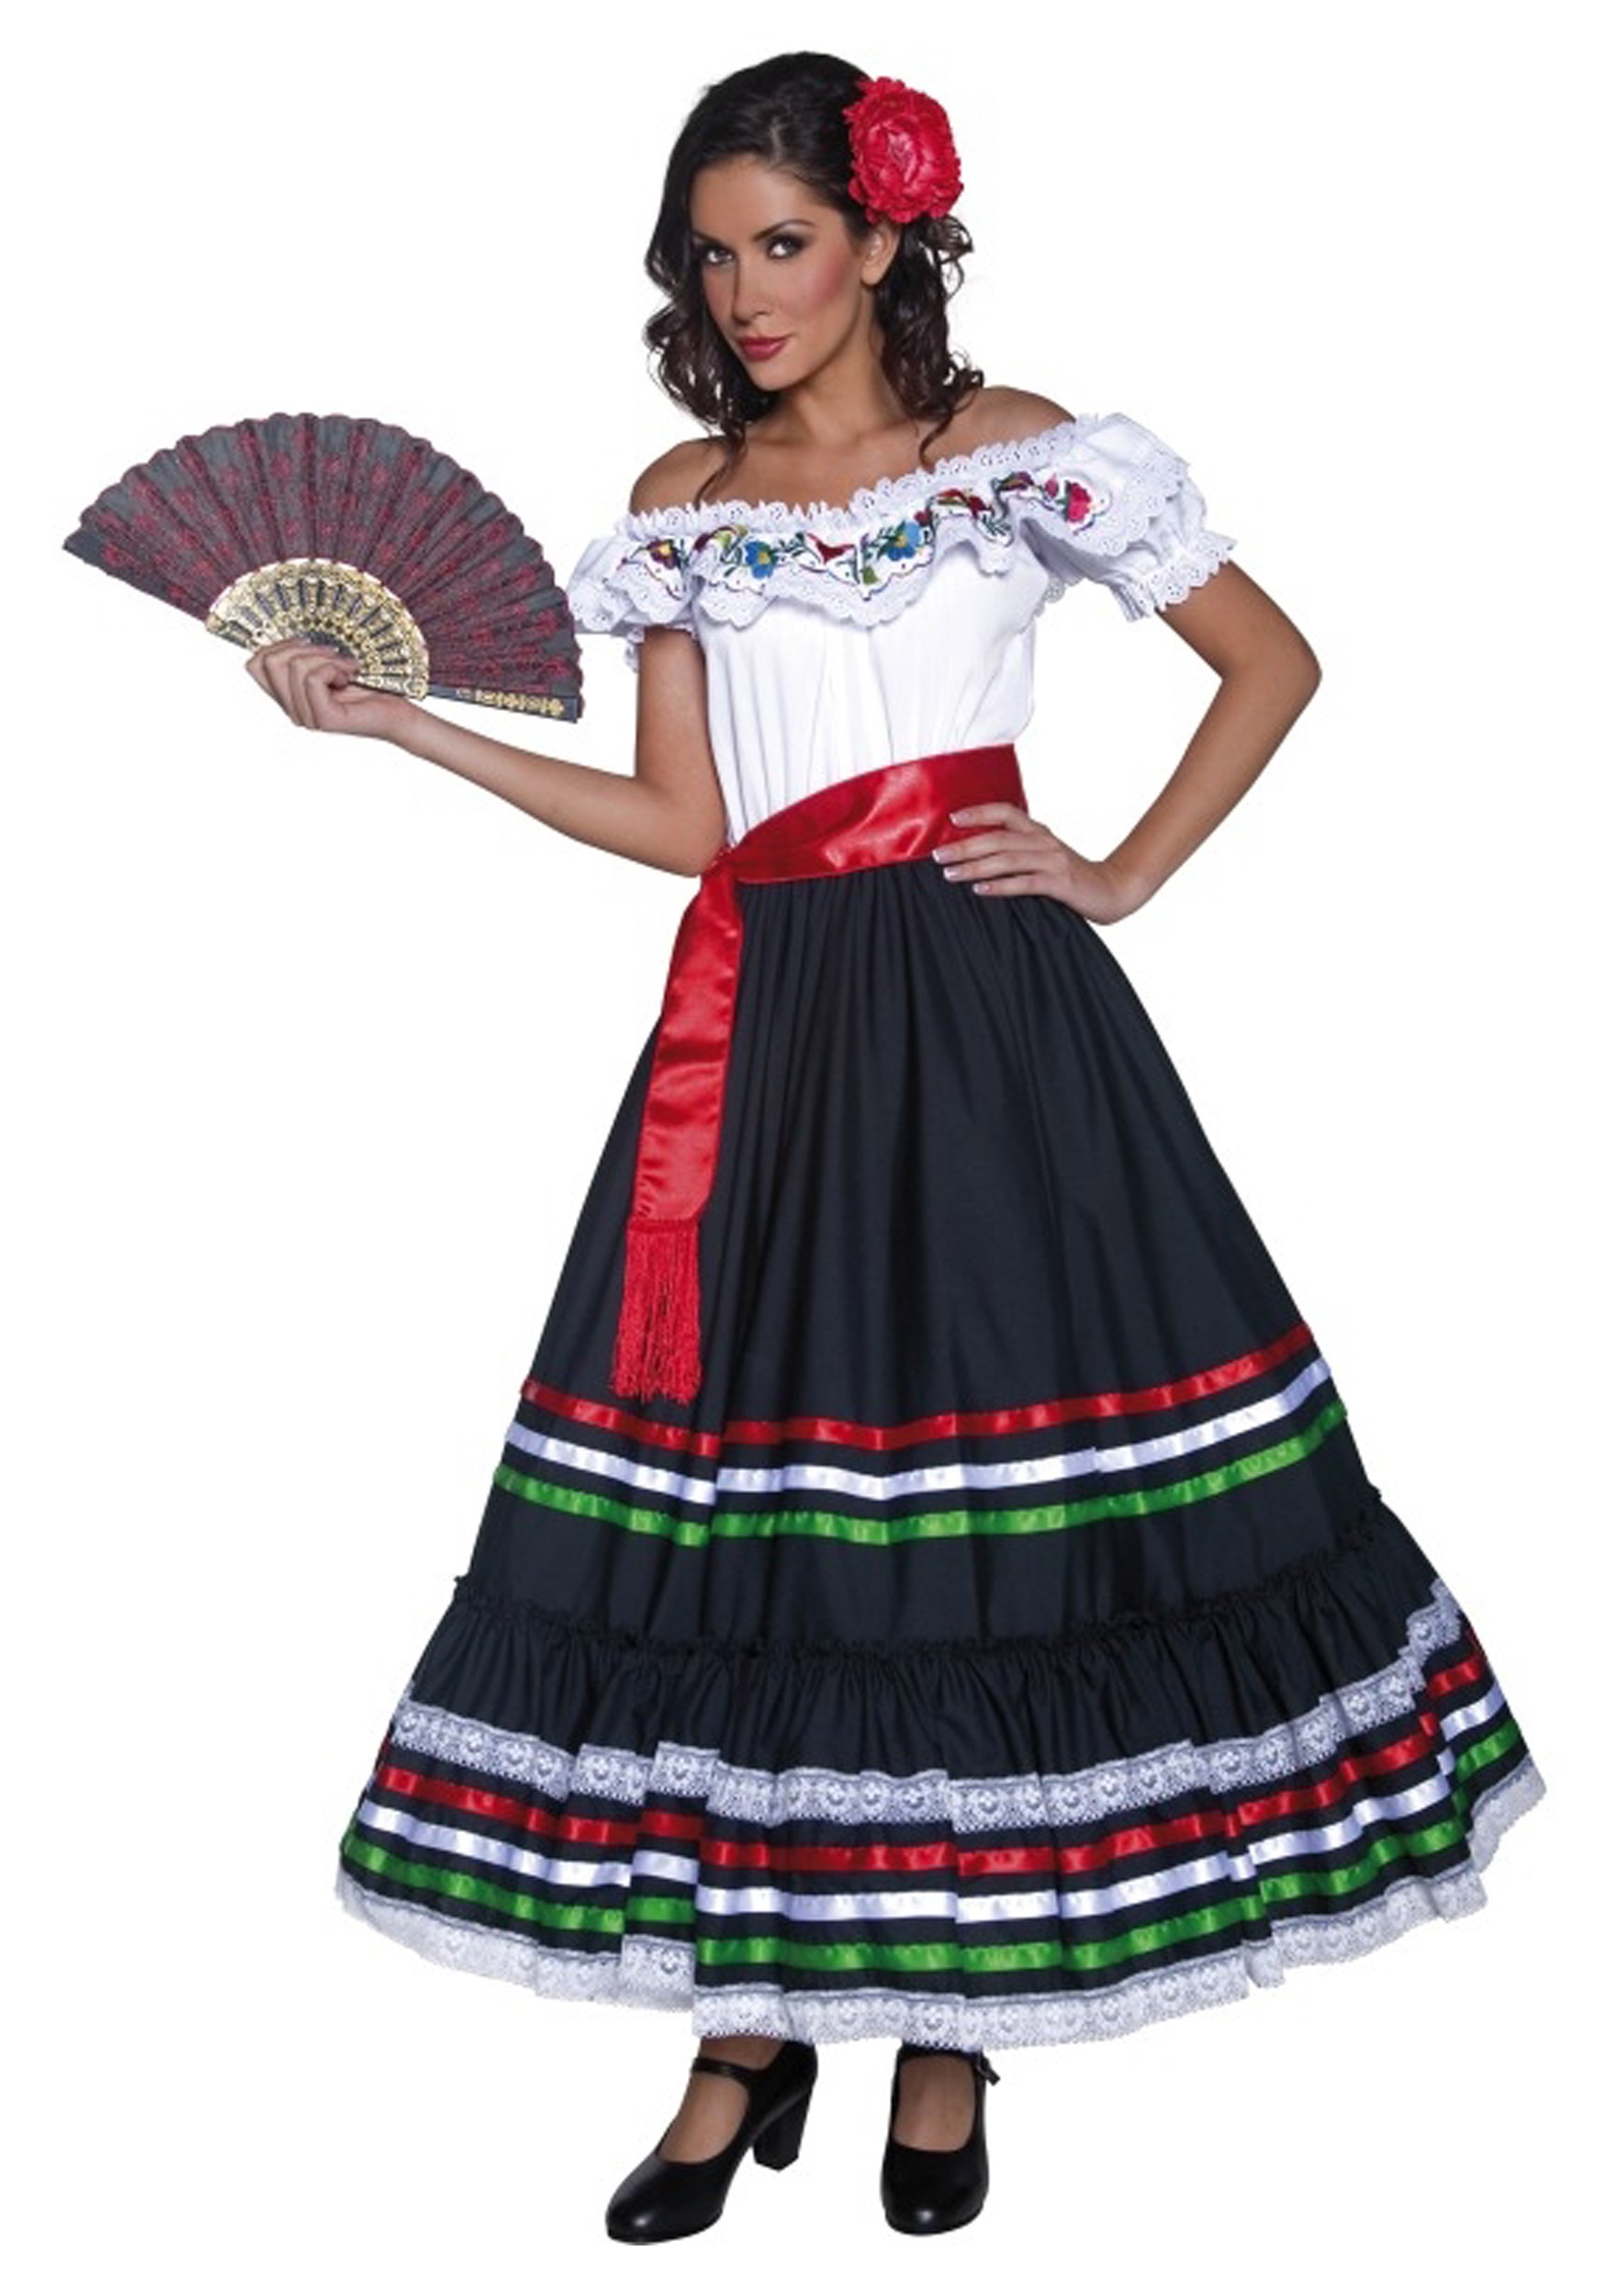 Authentic Western Senorita Costume , Spanish Costumes For Women